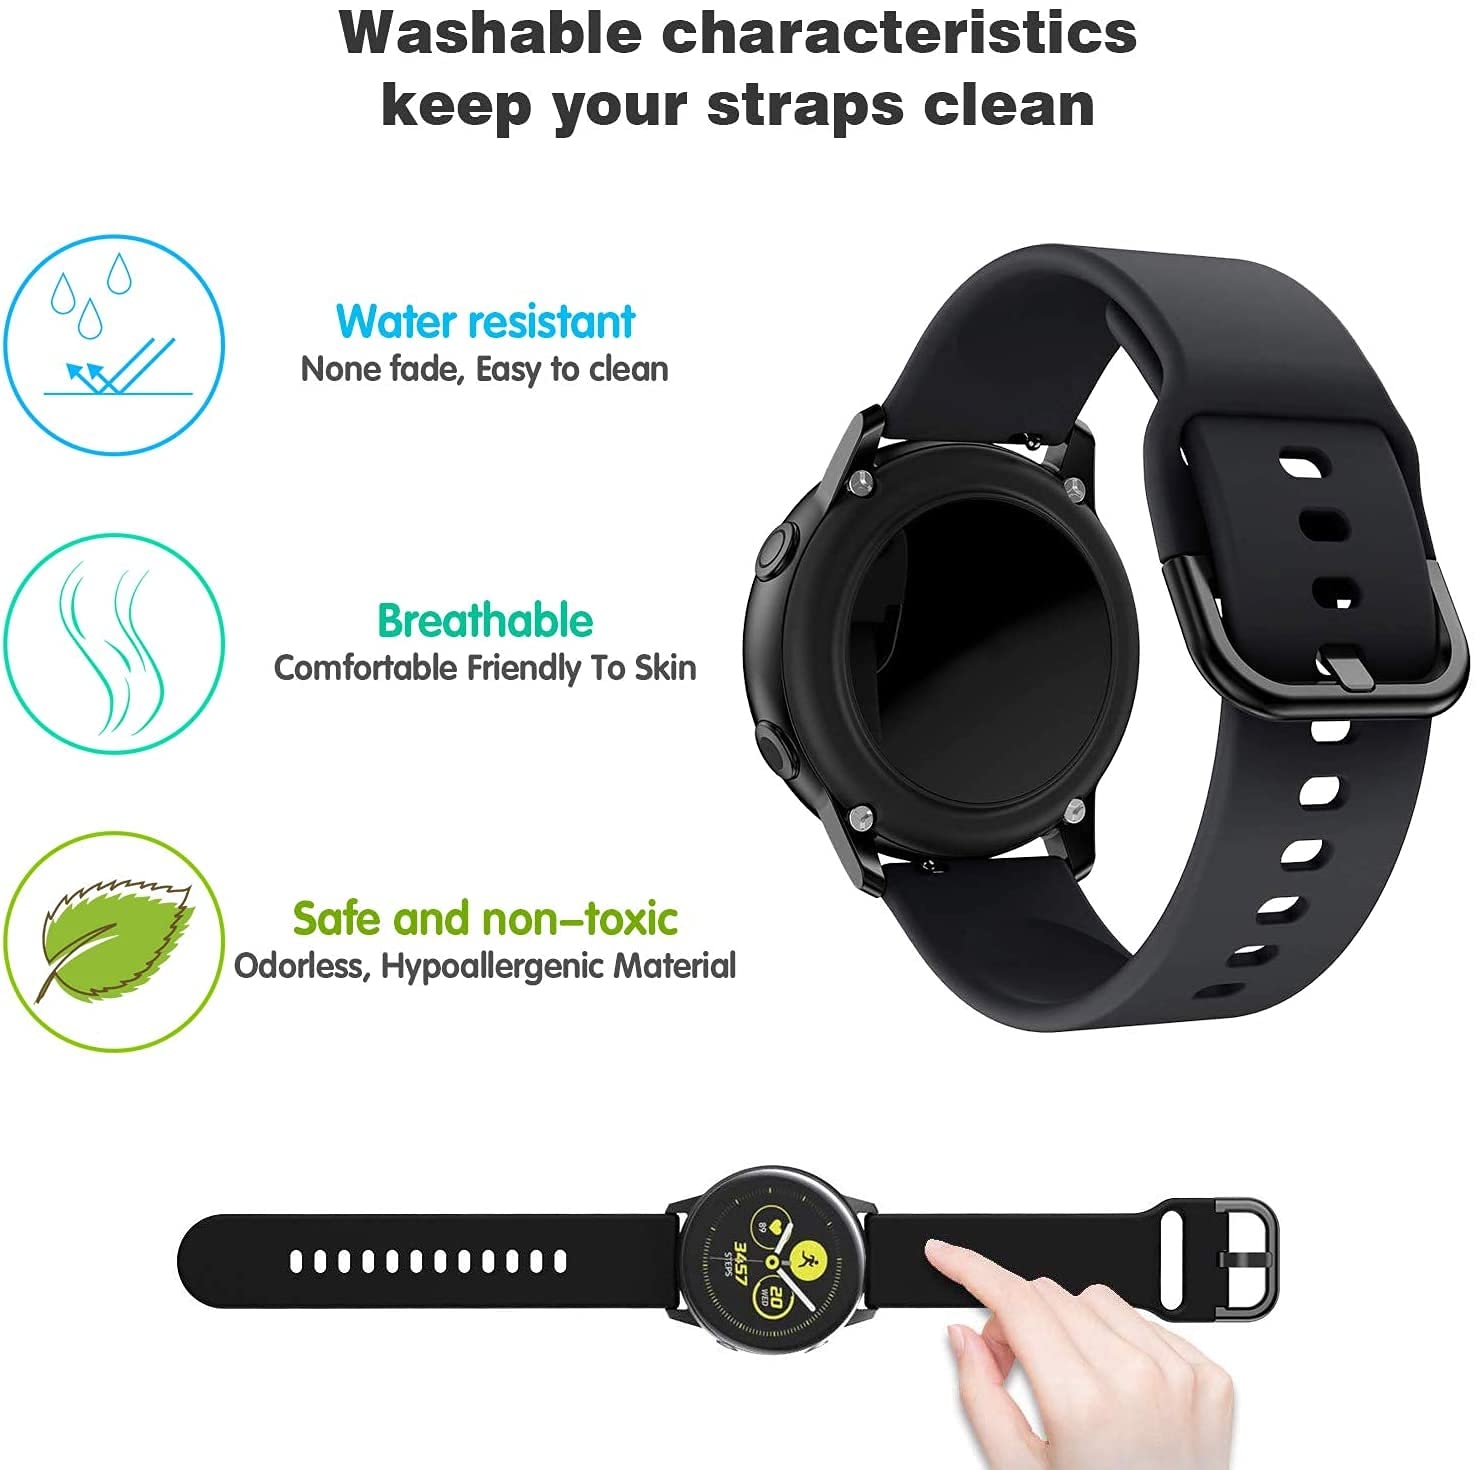 سوار ساعة سامسونج (حزام ساعة) سيليكون – أخضر O Ozone Silicone Strap for Samsung Galaxy Watch